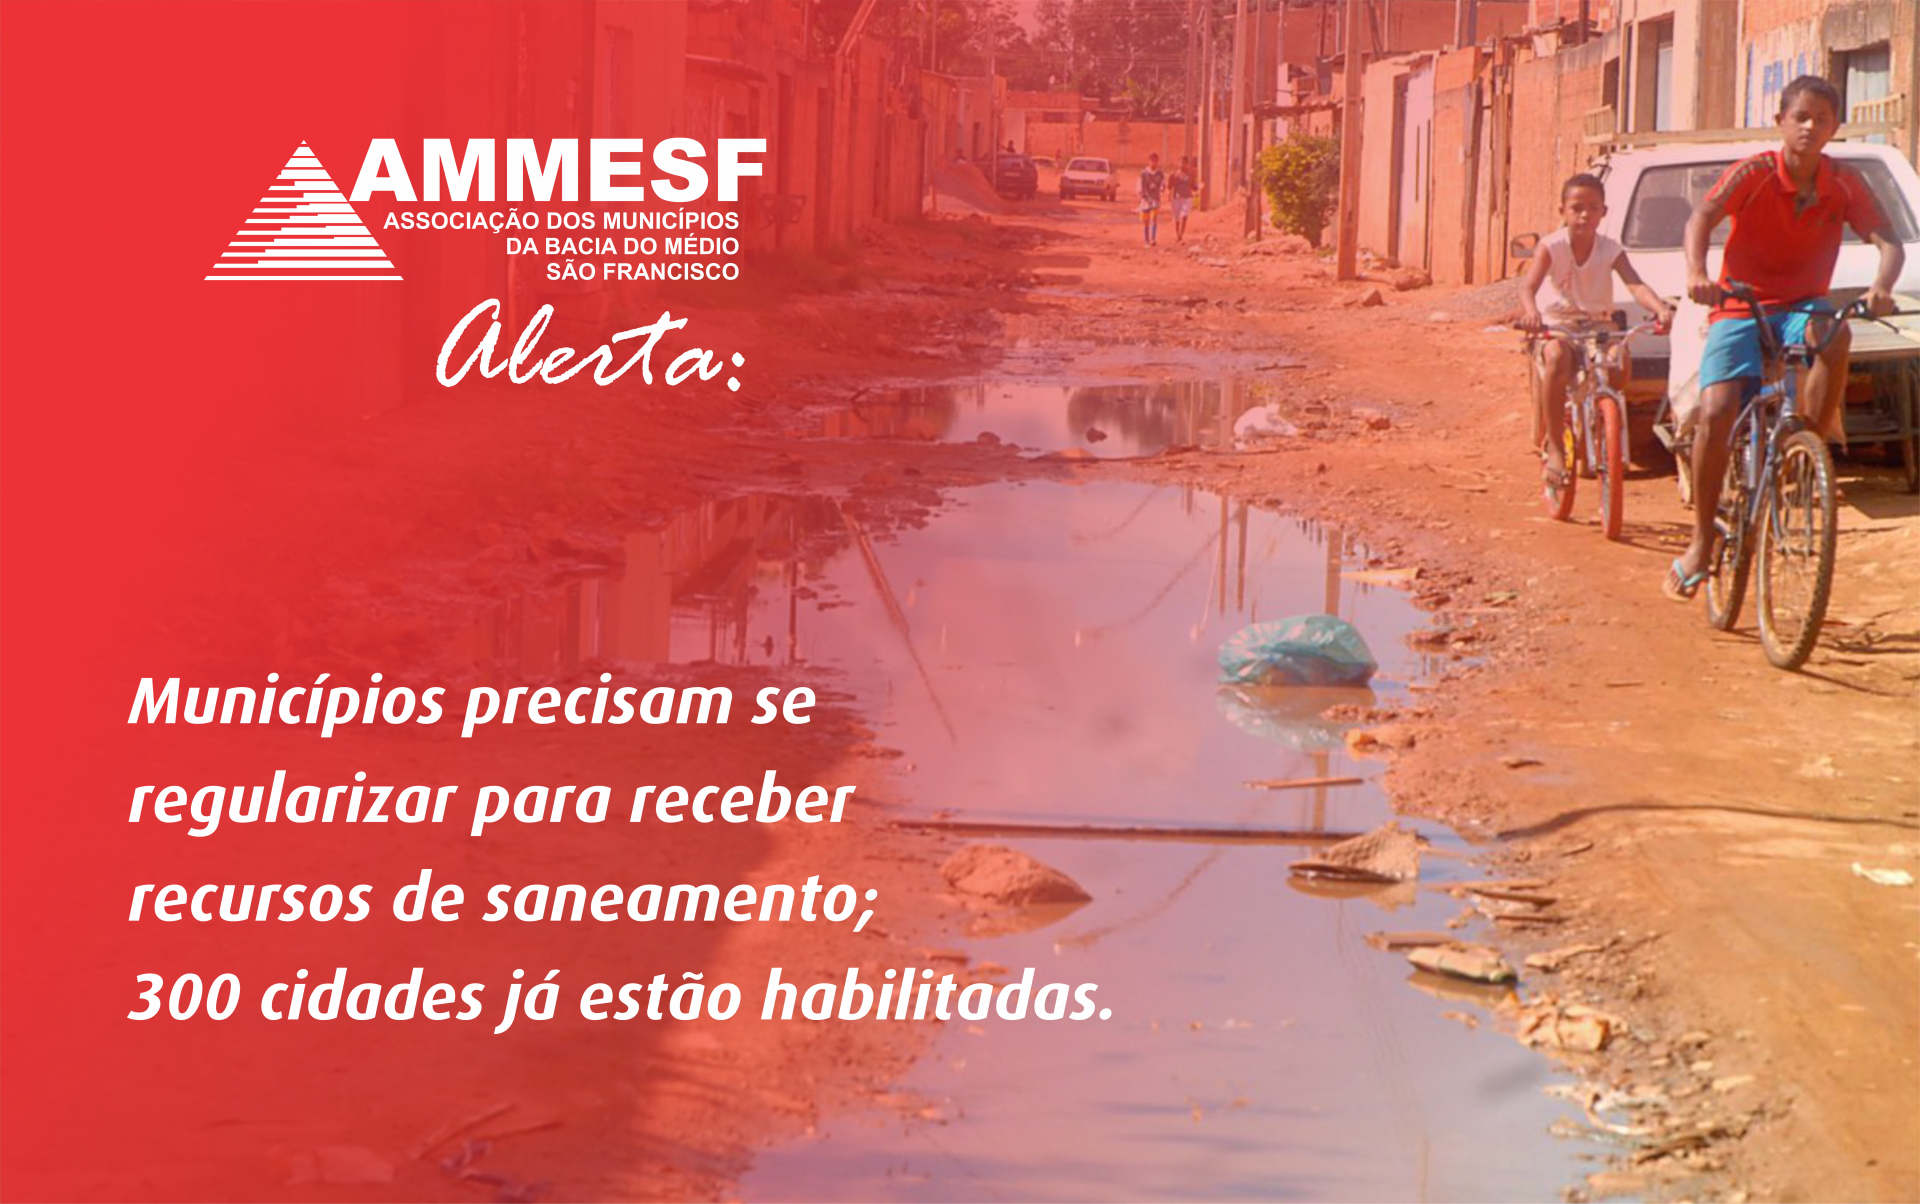 AMMESF reforça a urgência de regularização dos municípios para receber recursos de saneamento, que já estão garantidos para mais de 300 cidades